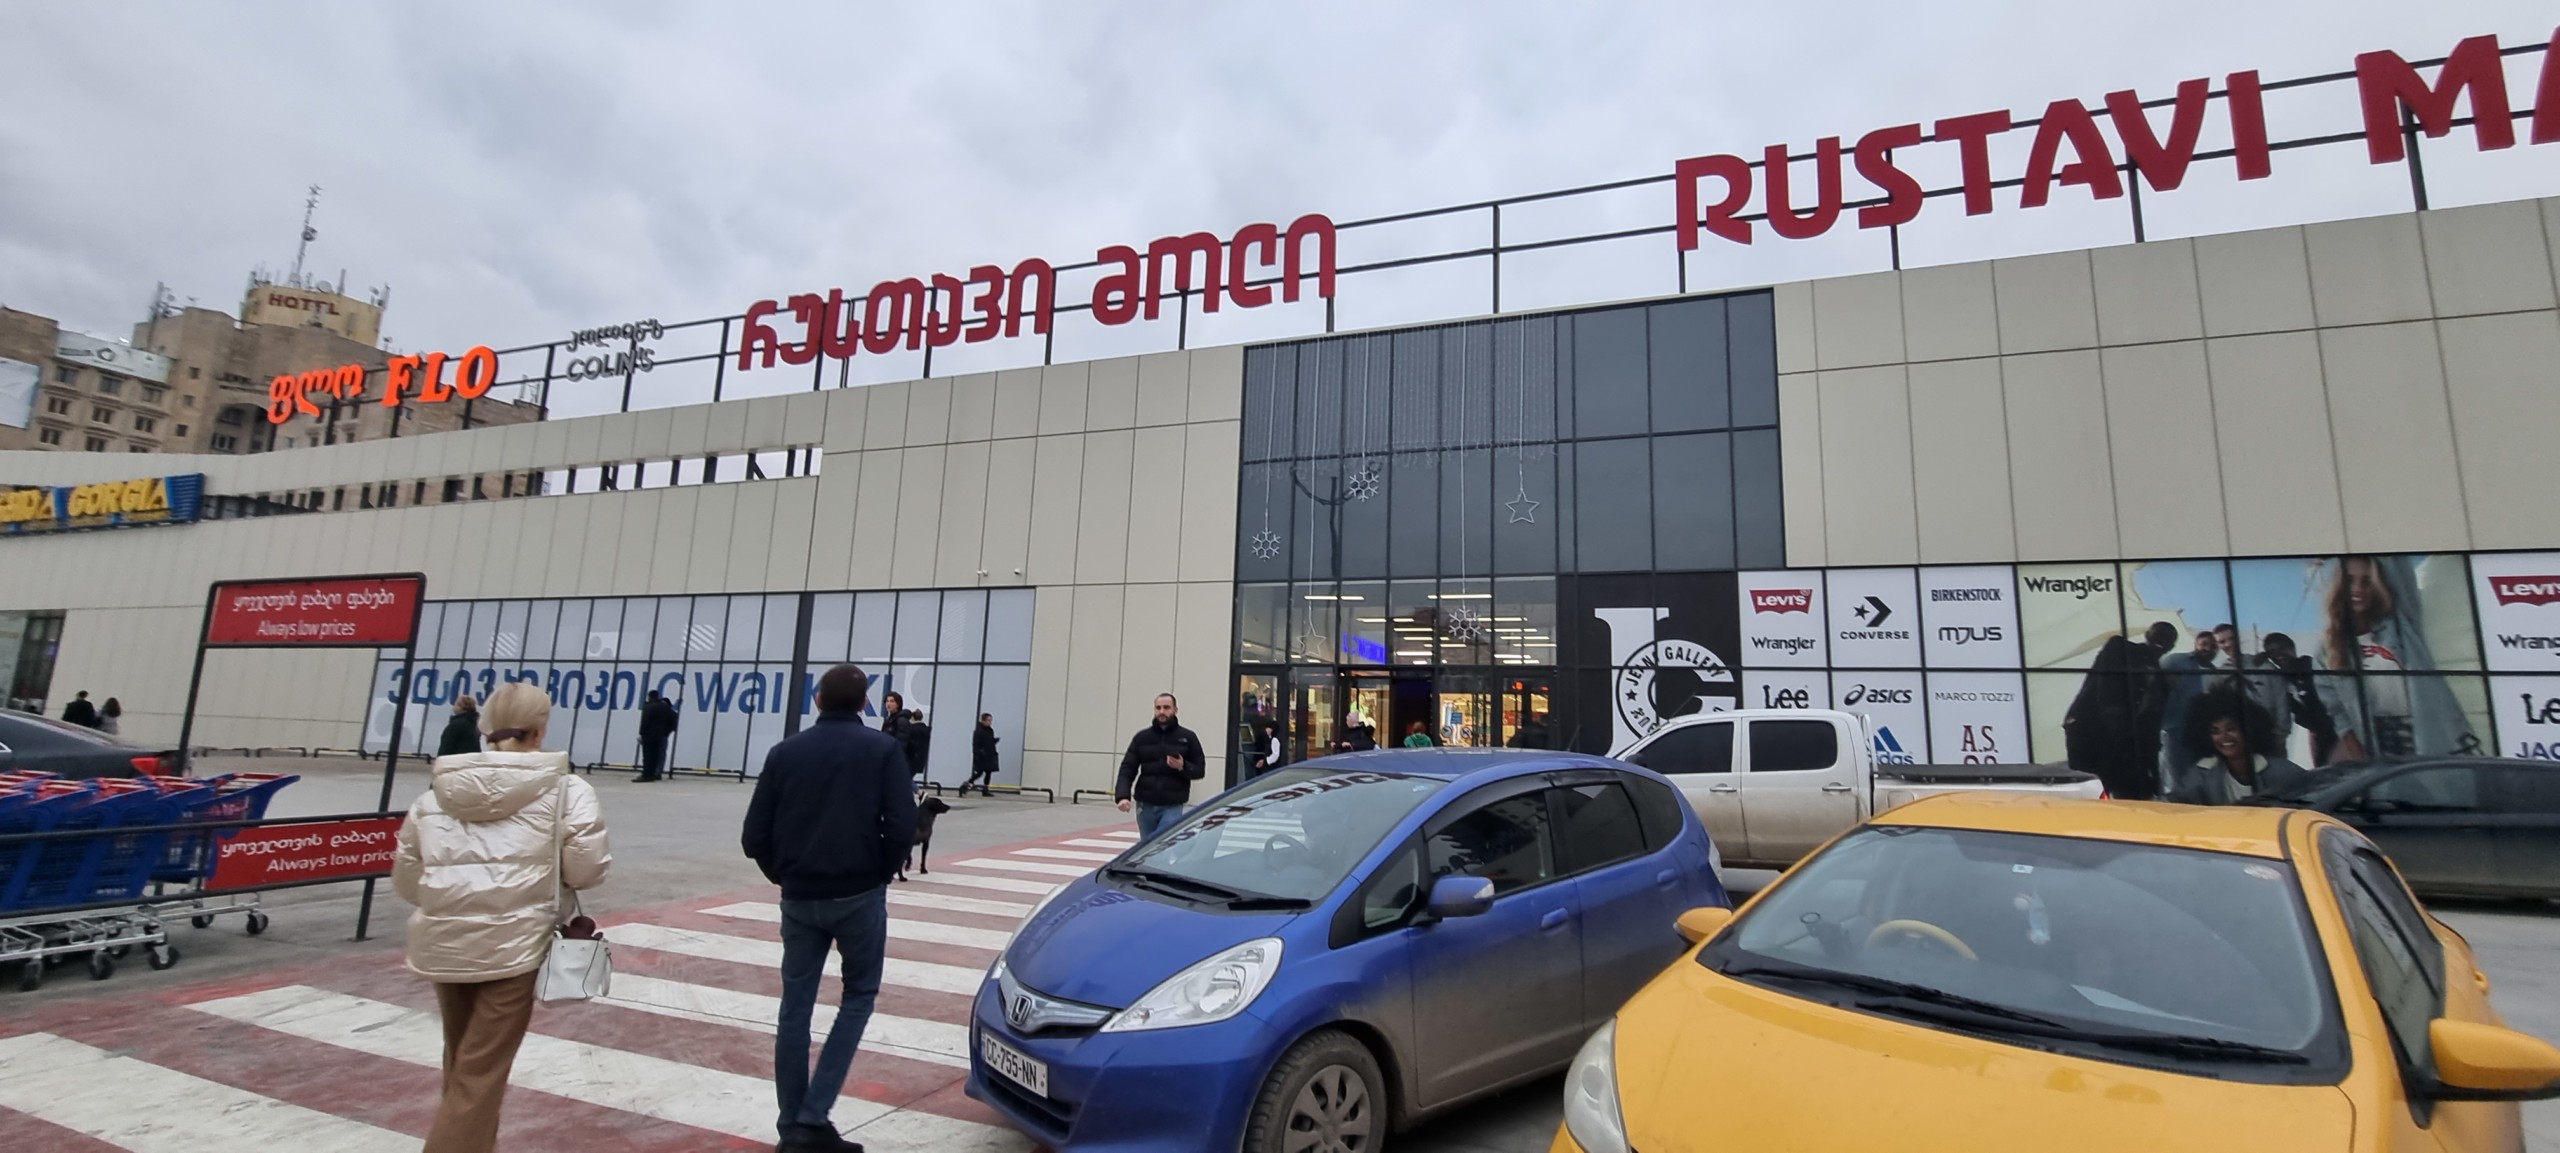 Торговый центр «Rustavi mall» в Грузии, фото снаружи